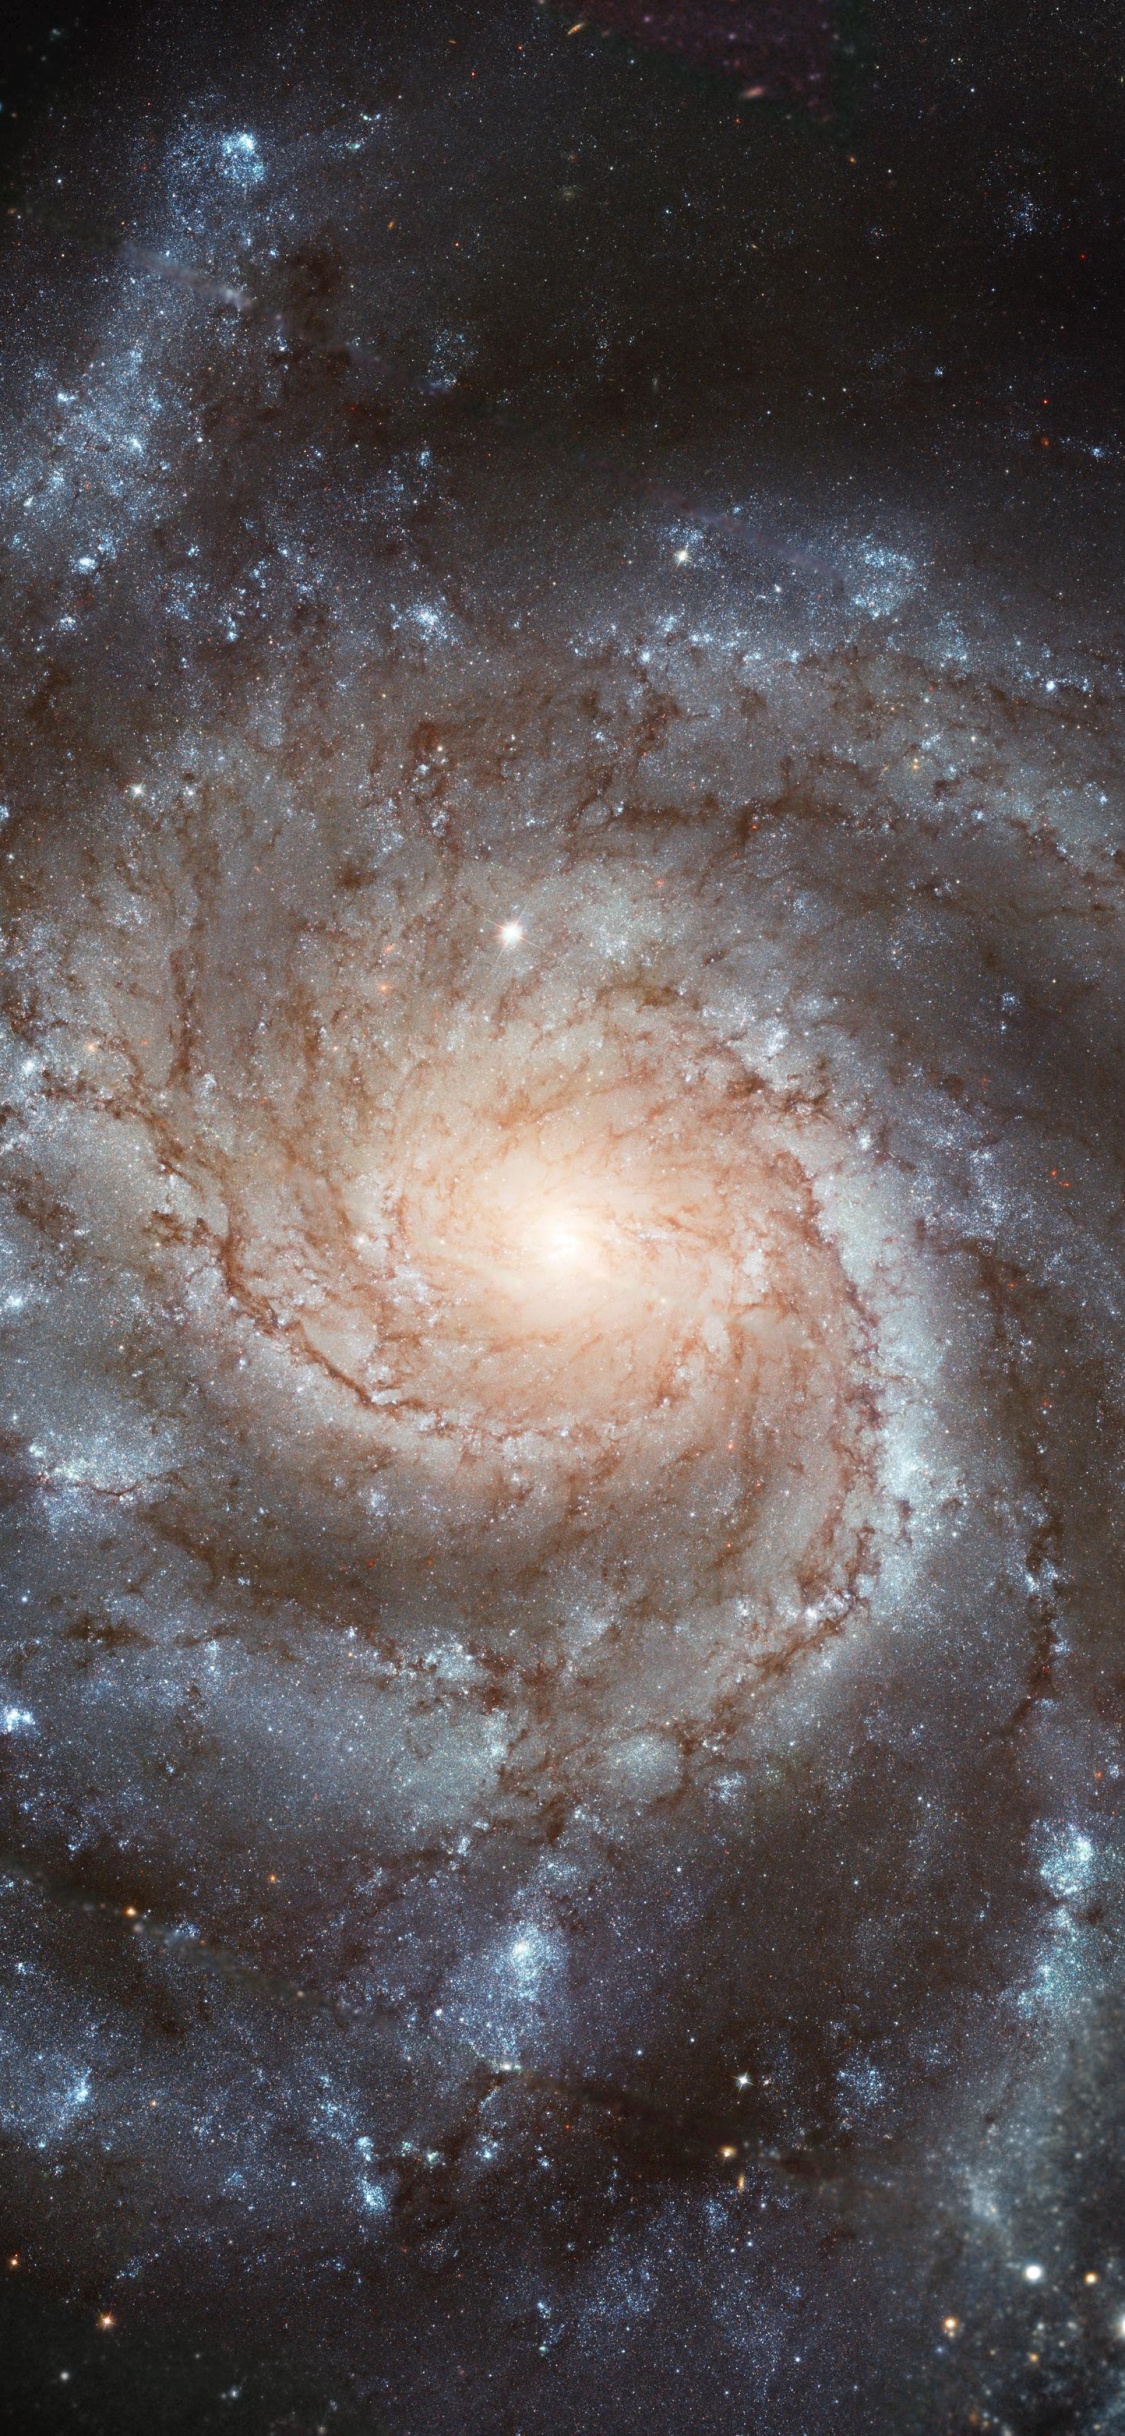 螺旋星系, 哈勃太空望远镜, 天文学, 天文学对象, 宇宙 壁纸 1125x2436 允许